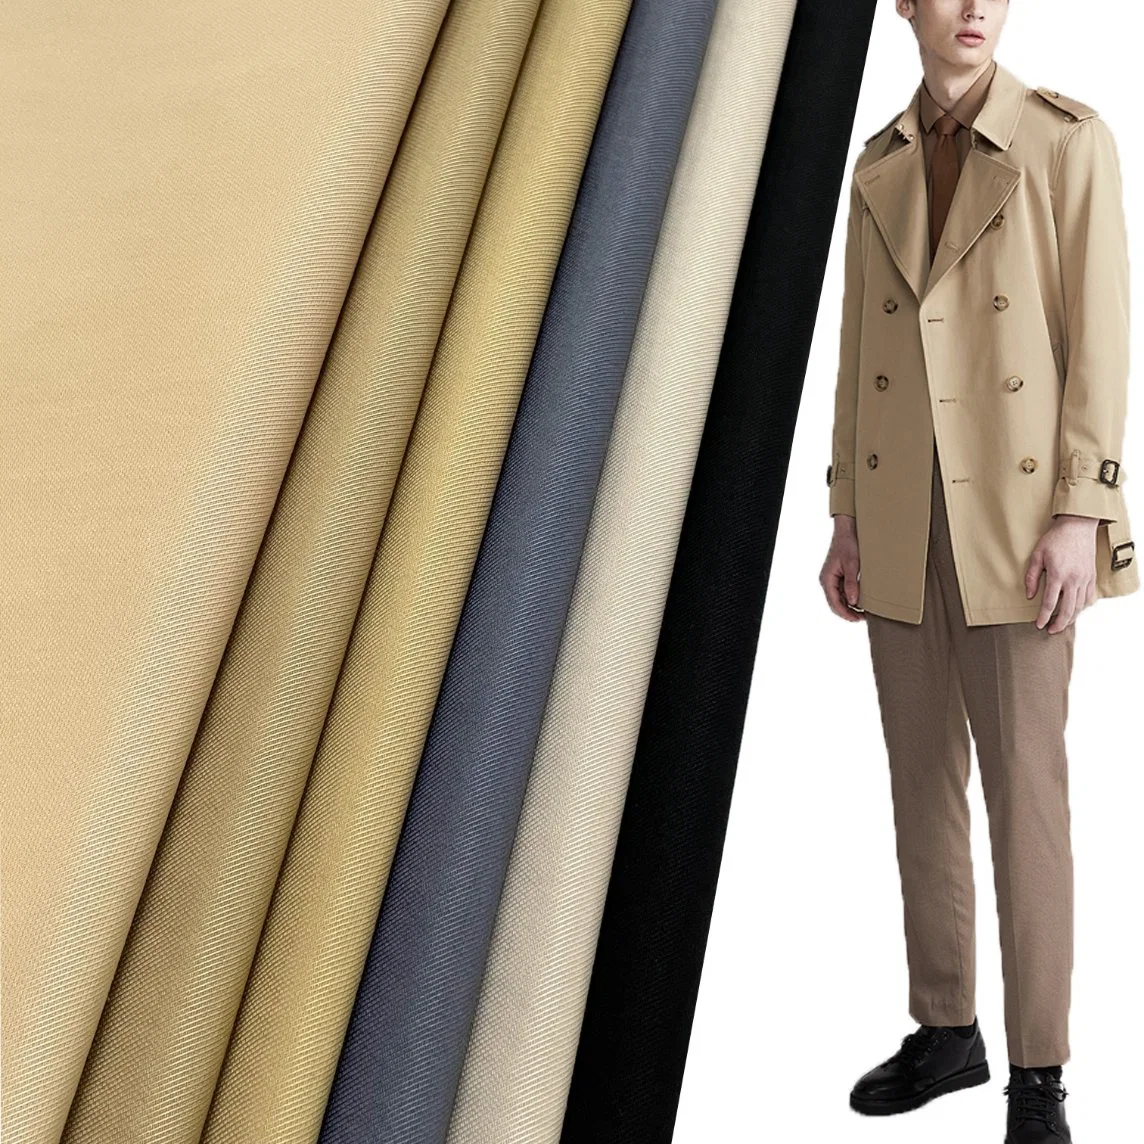 Tecido de sarja de alta qualidade impermeável de poliéster, nylon e algodão para jaqueta corta-vento e sobretudo (poliéster/nylon).